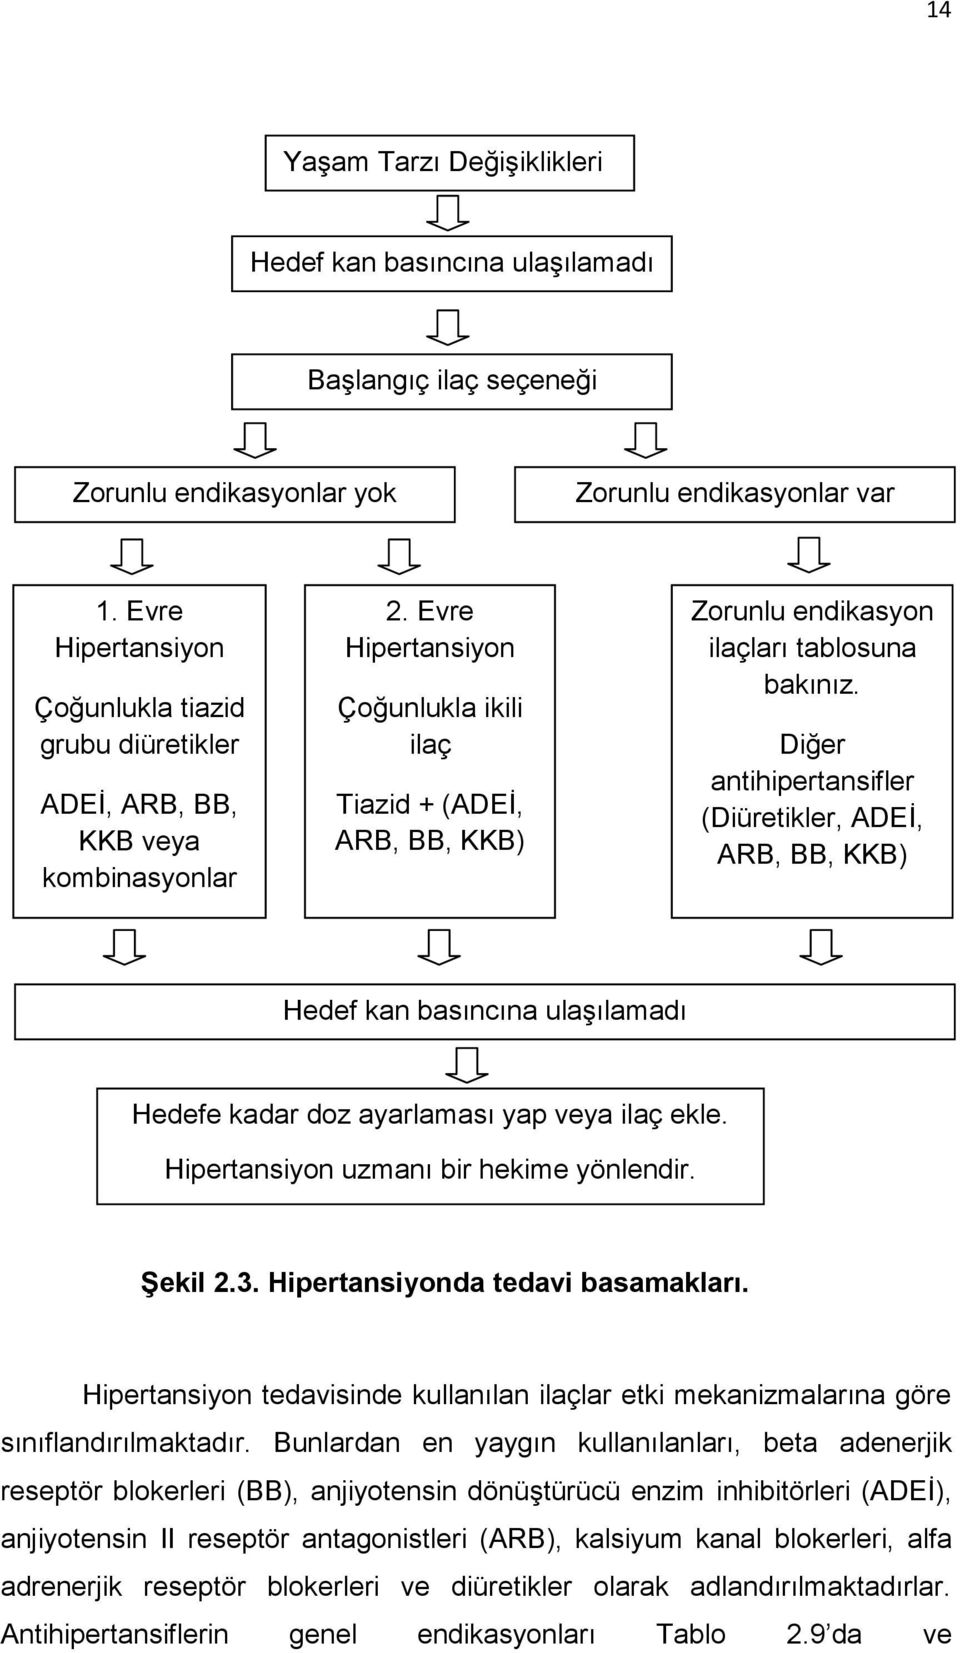 Evre Hipertansiyon Çoğunlukla ikili ilaç Tiazid + (ADEİ, ARB, BB, KKB) Zorunlu endikasyon ilaçları tablosuna bakınız.